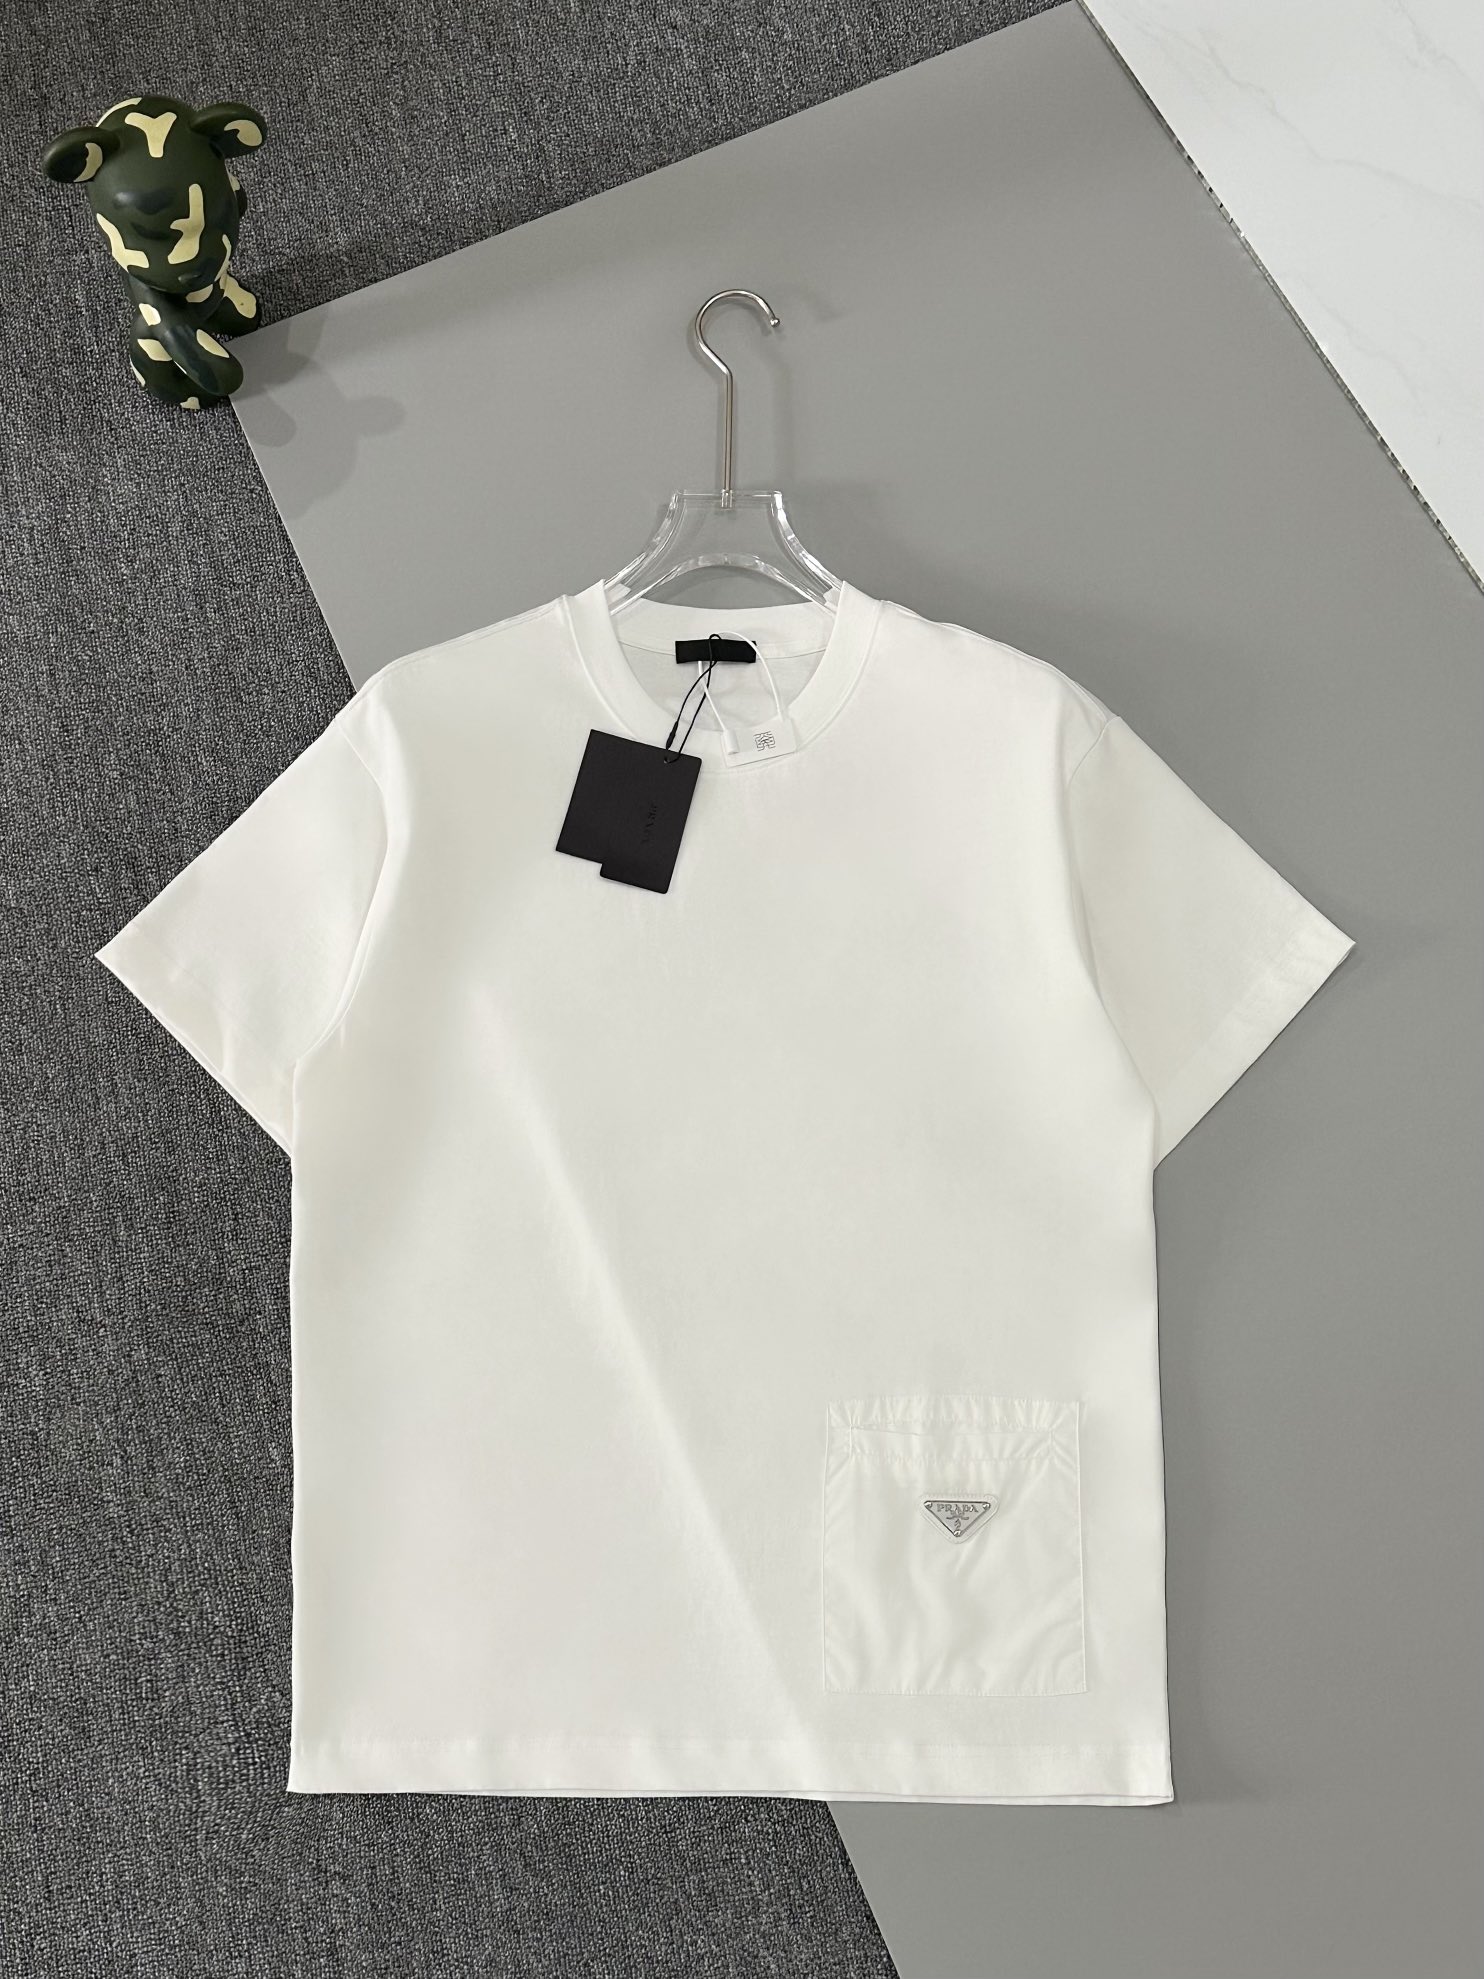 Prada Vêtements T-Shirt Noir Couleur orange Blanc épissure Unisexe Coton Vintage Manches courtes